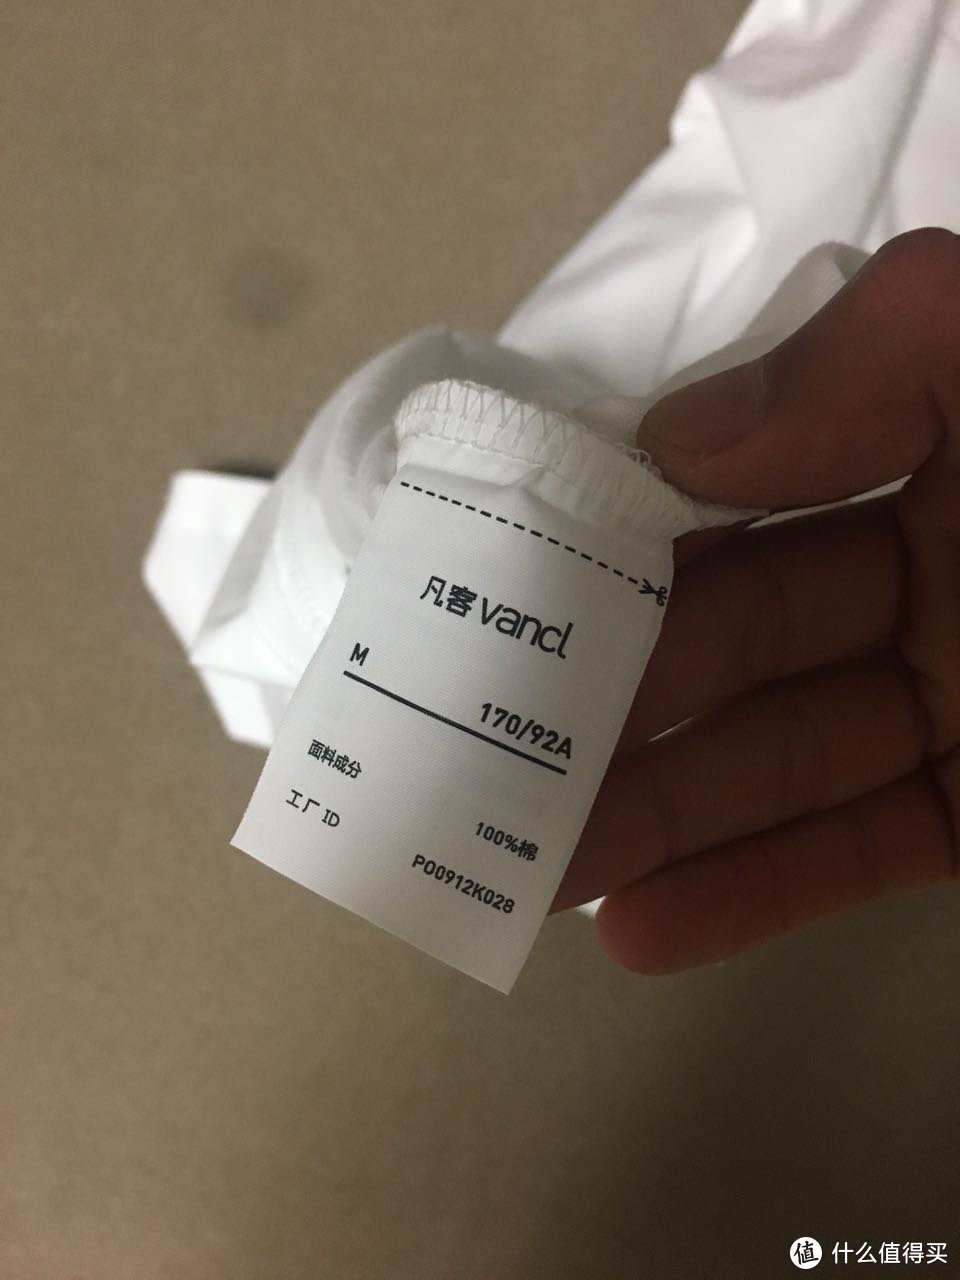 VANCL凡客诚品2017男士春款套装---懒癌晚期的第一次众测（附RP戒烟成功记）